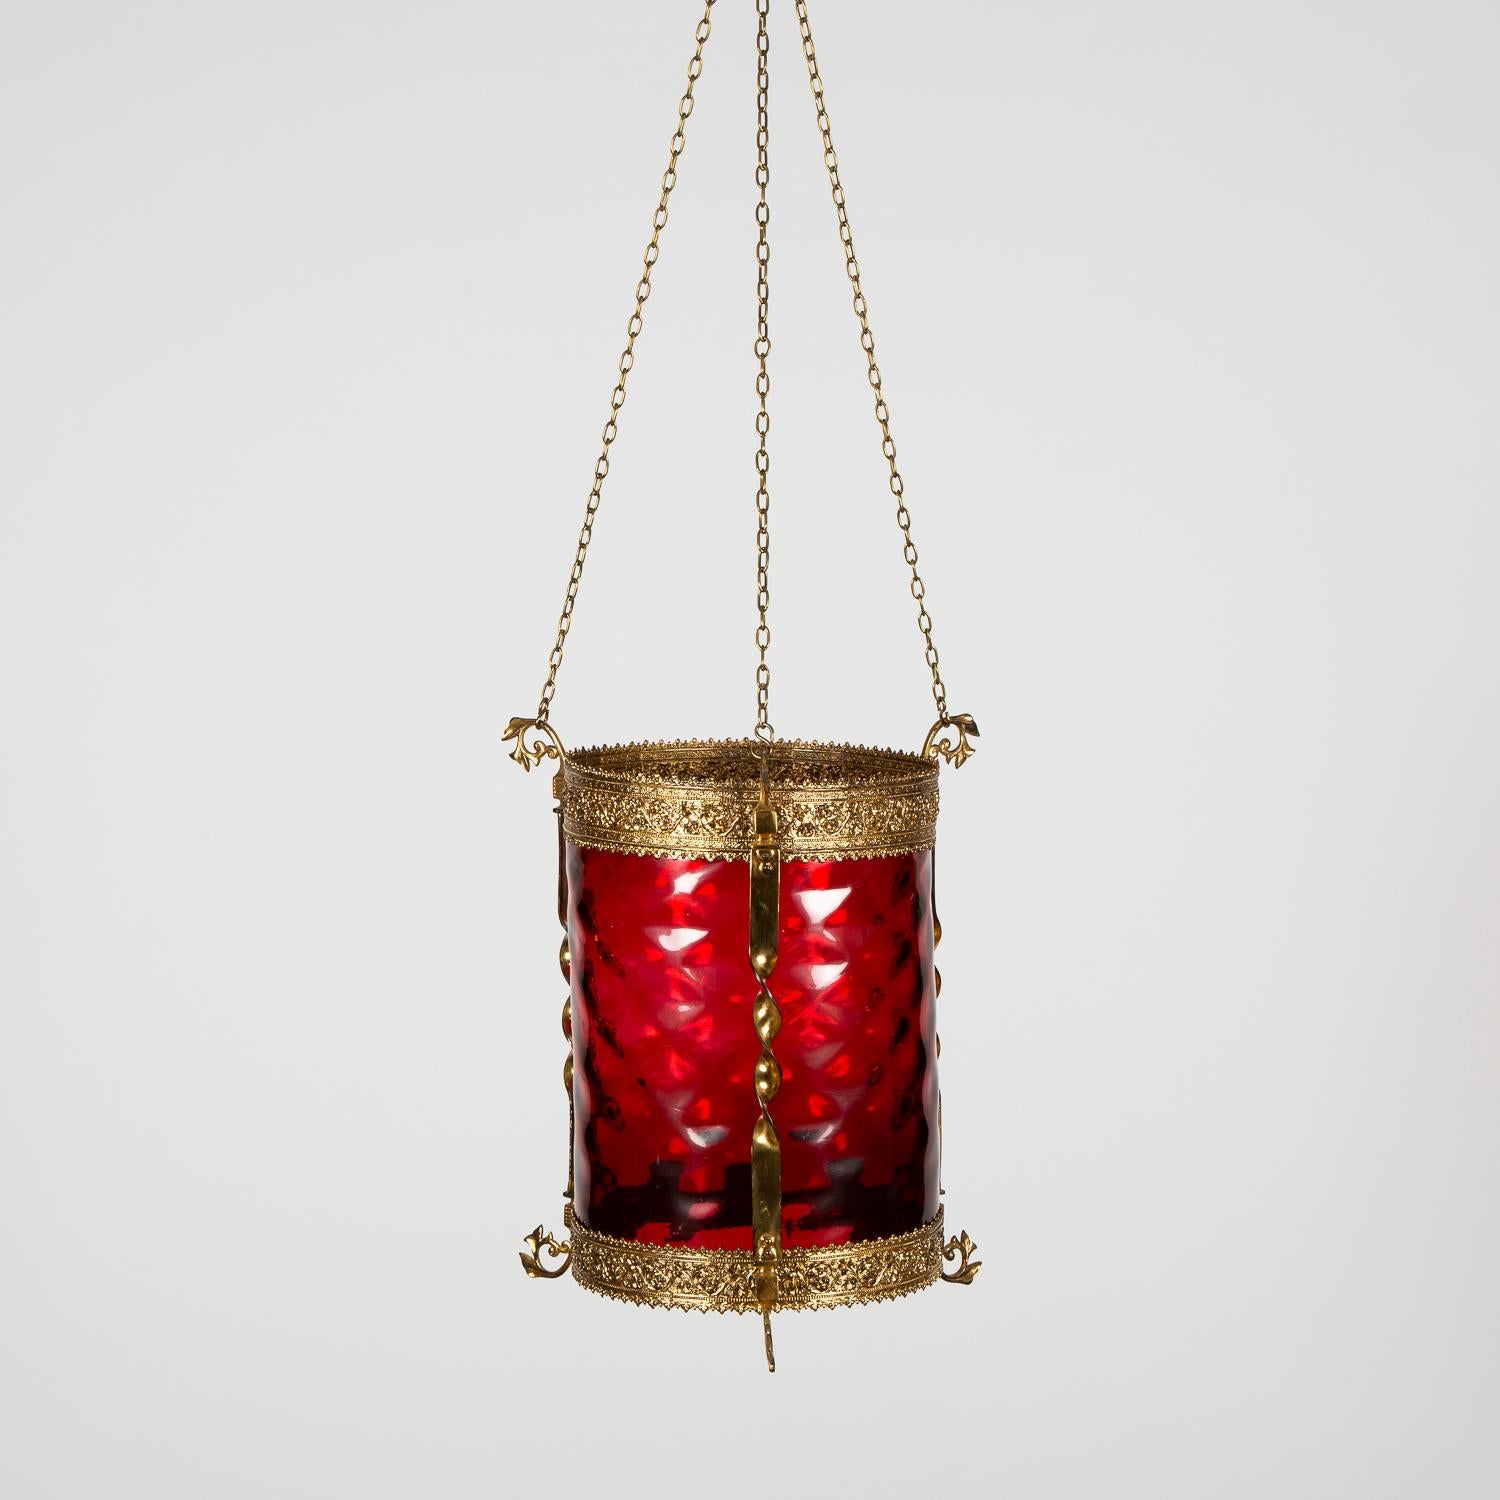 Hängelampe aus vergoldeter Bronze mit rotem Glas mit Vertiefungen.

Maße: Höhe beim Aufhängen: 34 Zoll - 86 cm. (Ketten können reduziert werden).


 